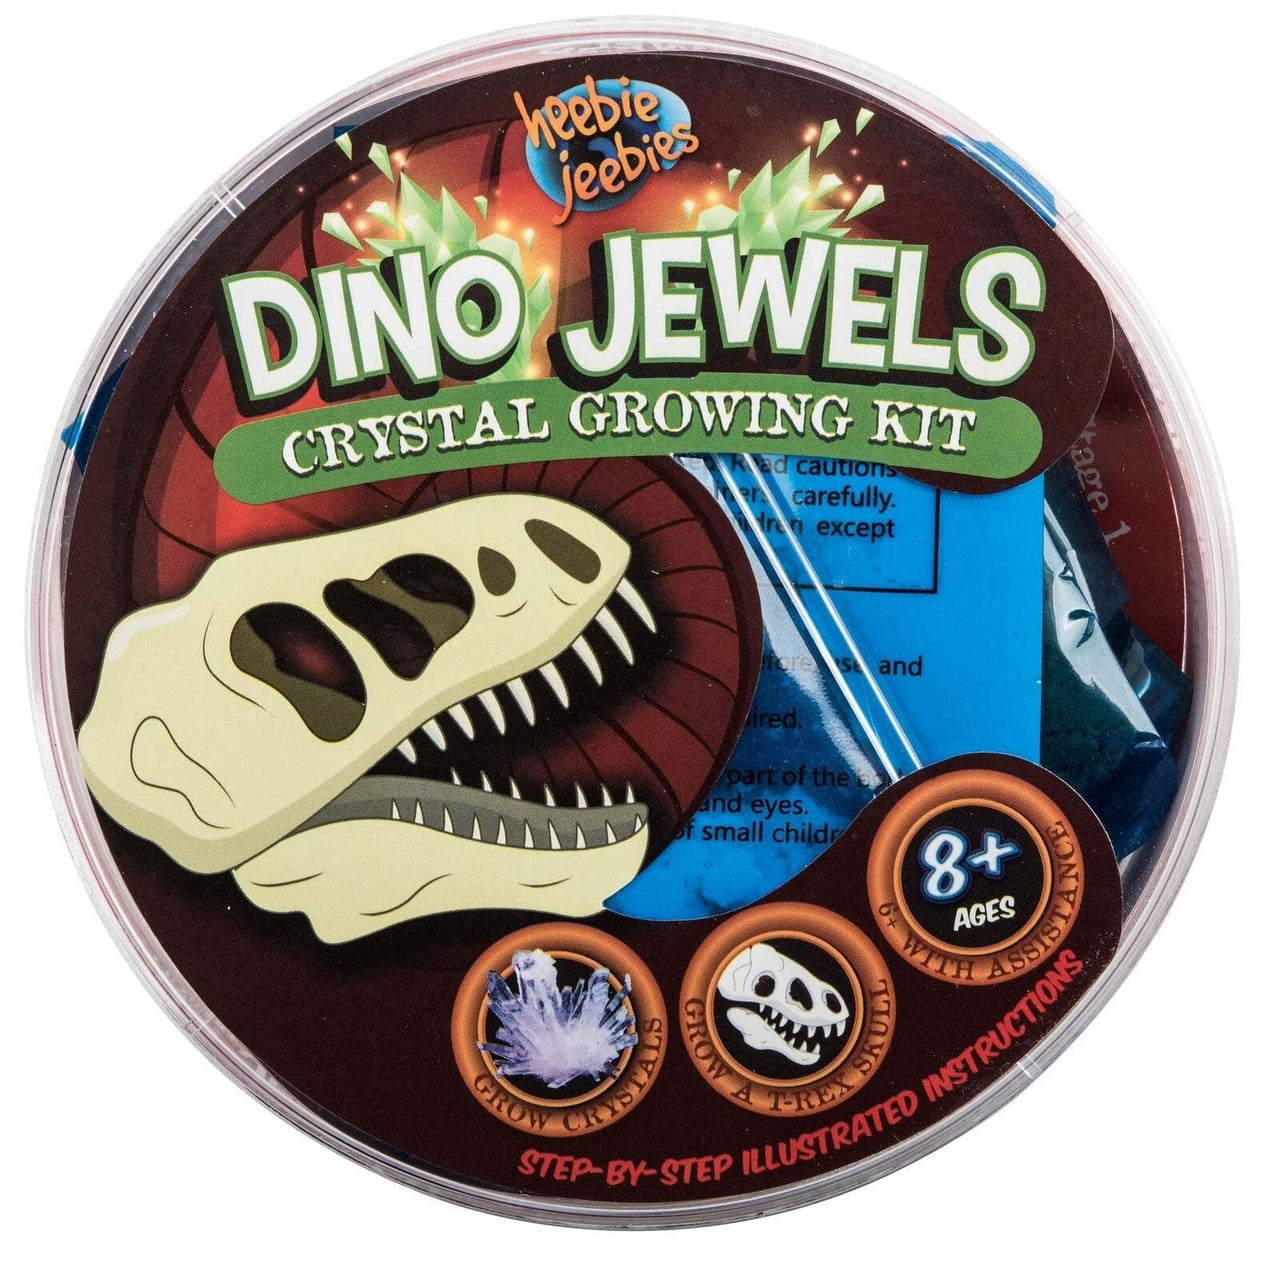 heebie jeebies General Heebie Jeebies Dino Jewels Crystal Growing Kit